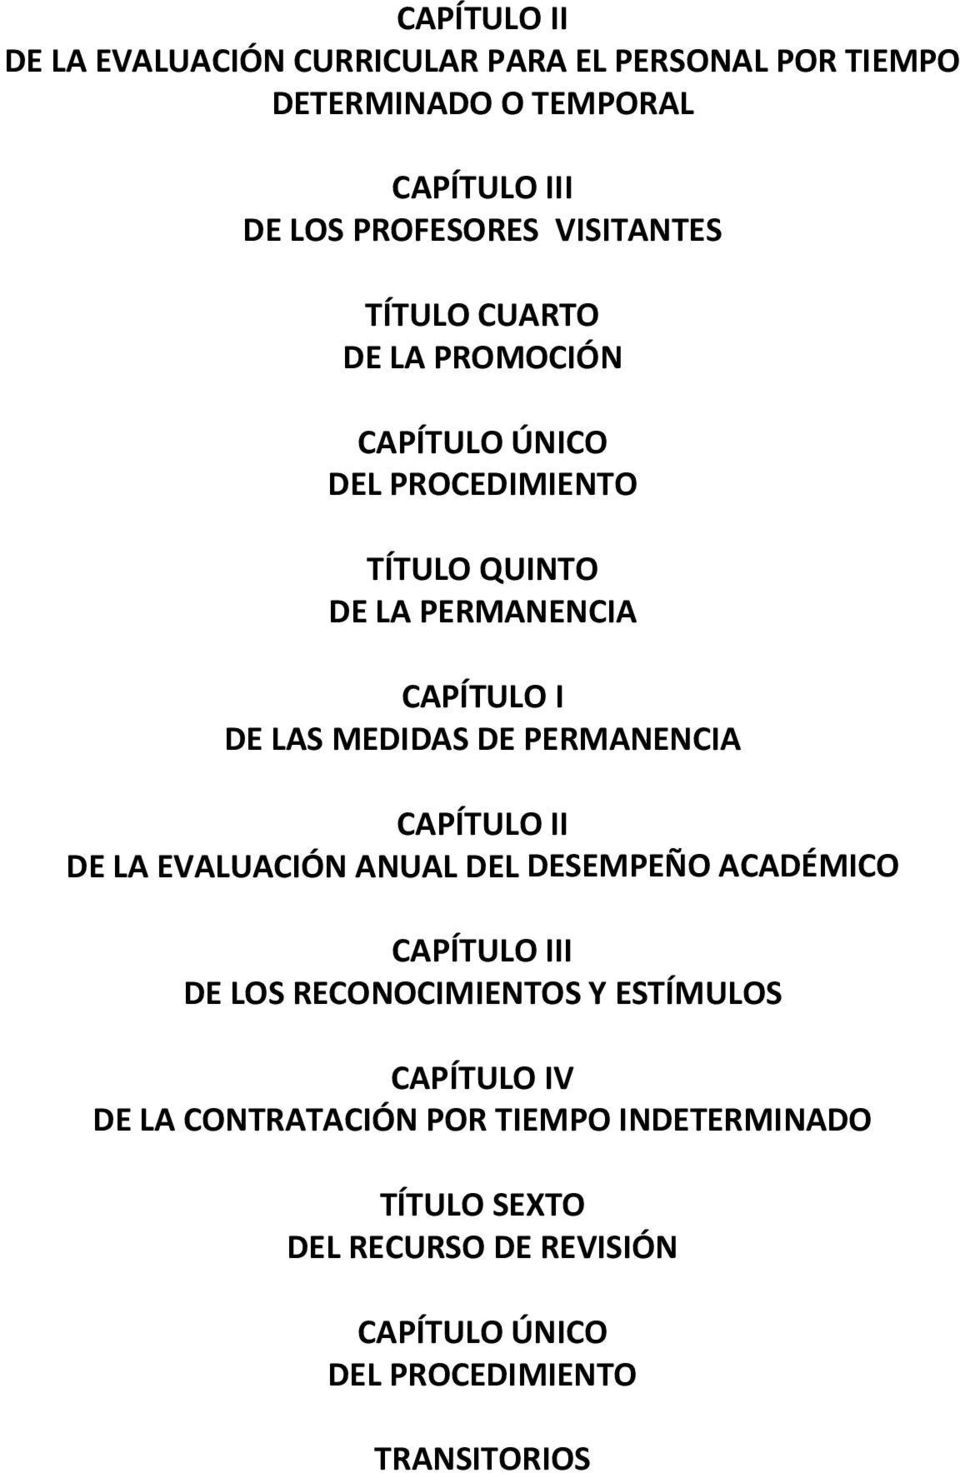 MEDIDAS DE PERMANENCIA CAPÍTULO II DE LA EVALUACIÓN ANUAL DEL DESEMPEÑO ACADÉMICO CAPÍTULO III DE LOS RECONOCIMIENTOS Y